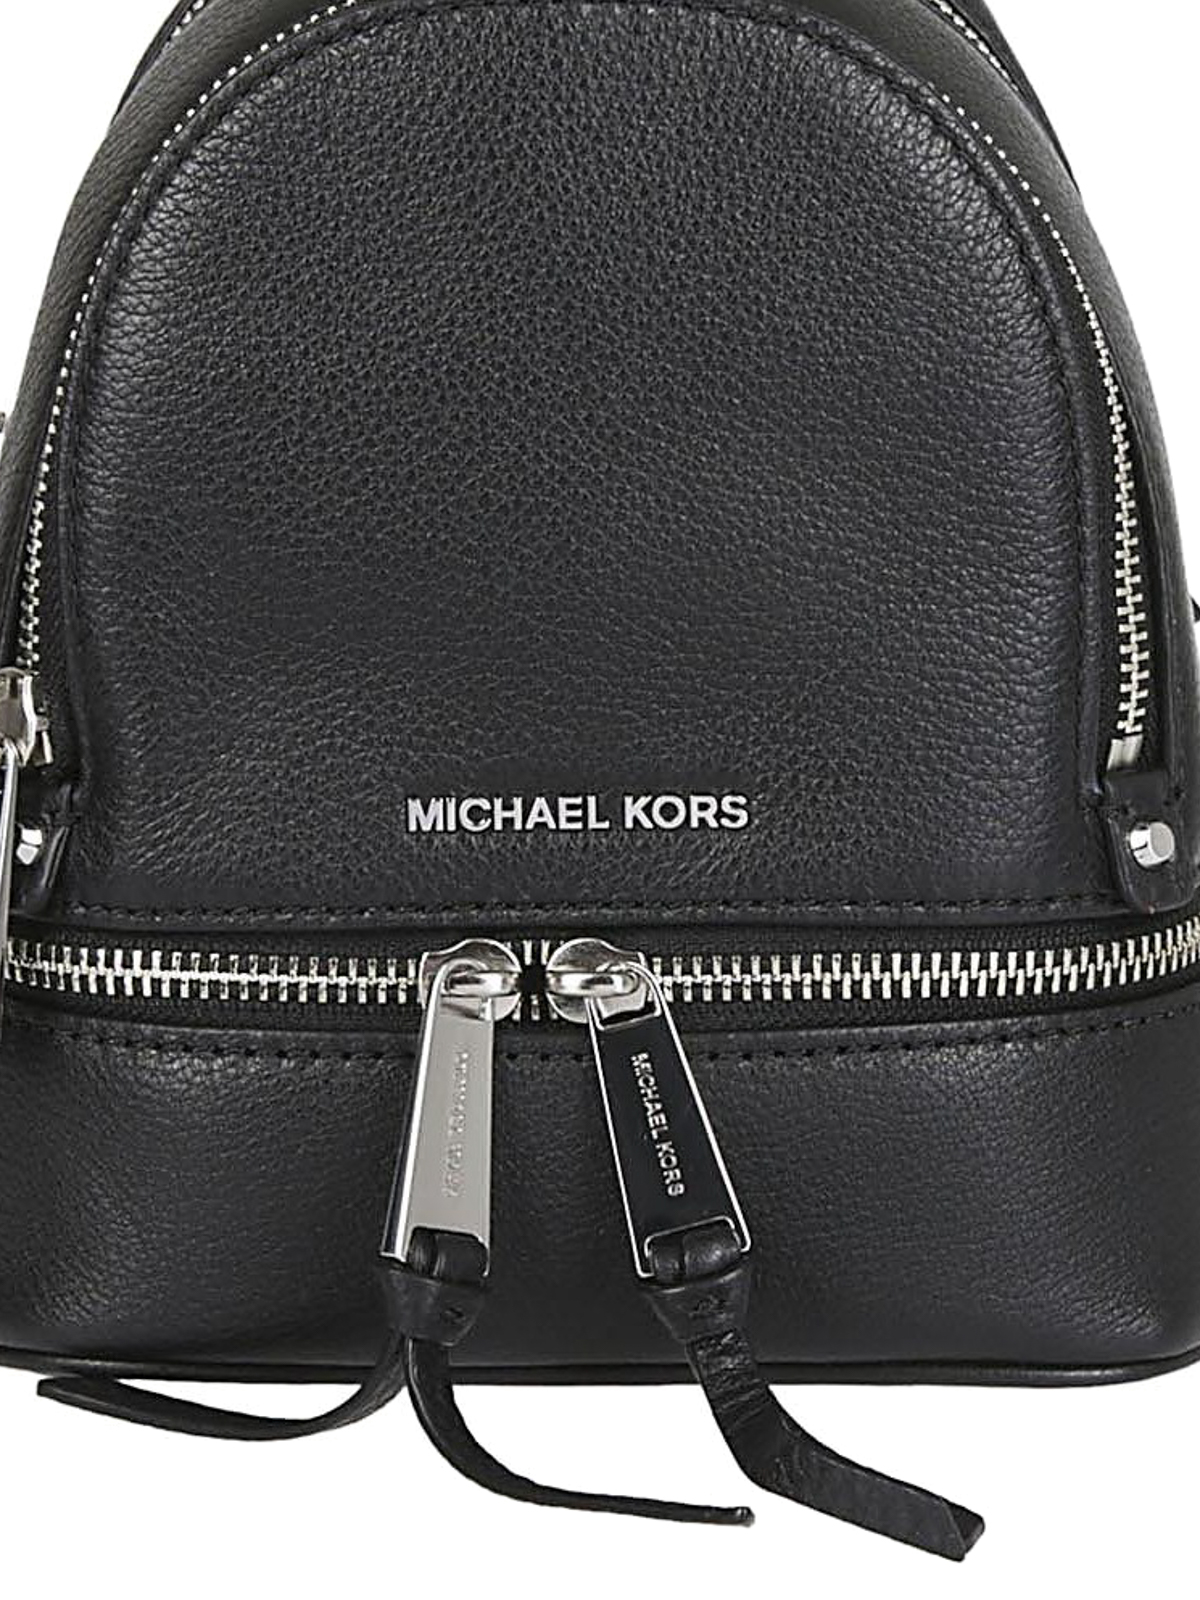 michael kors rhea mini leather backpack